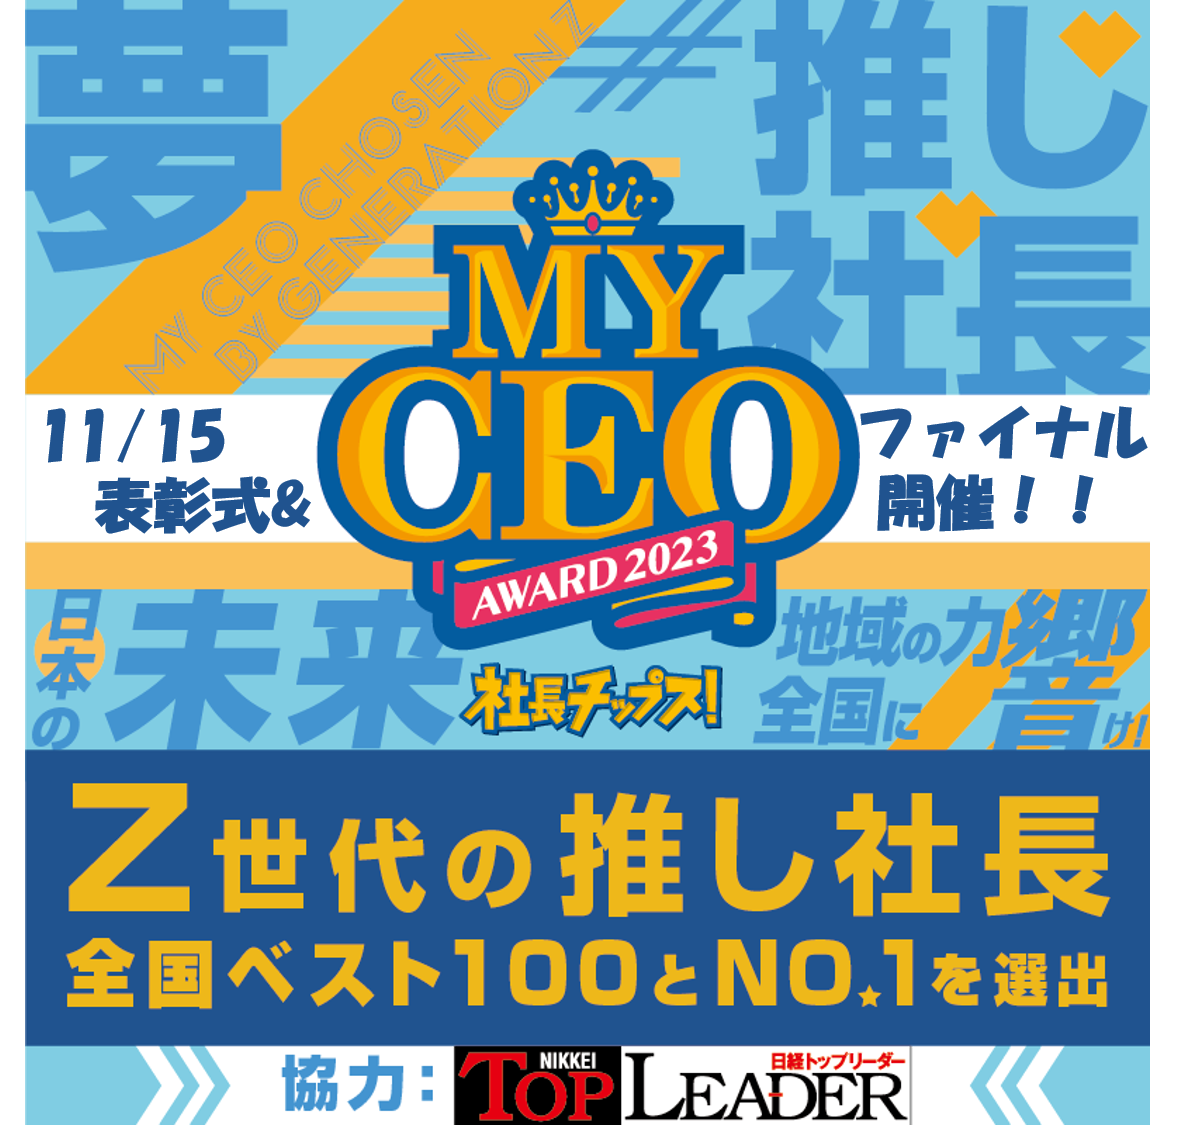 Z世代が選ぶ “推し社長”アワード　【MY CEO AWARD】11/15 ファイナル開催！！　FINALIST 7結果発表！！